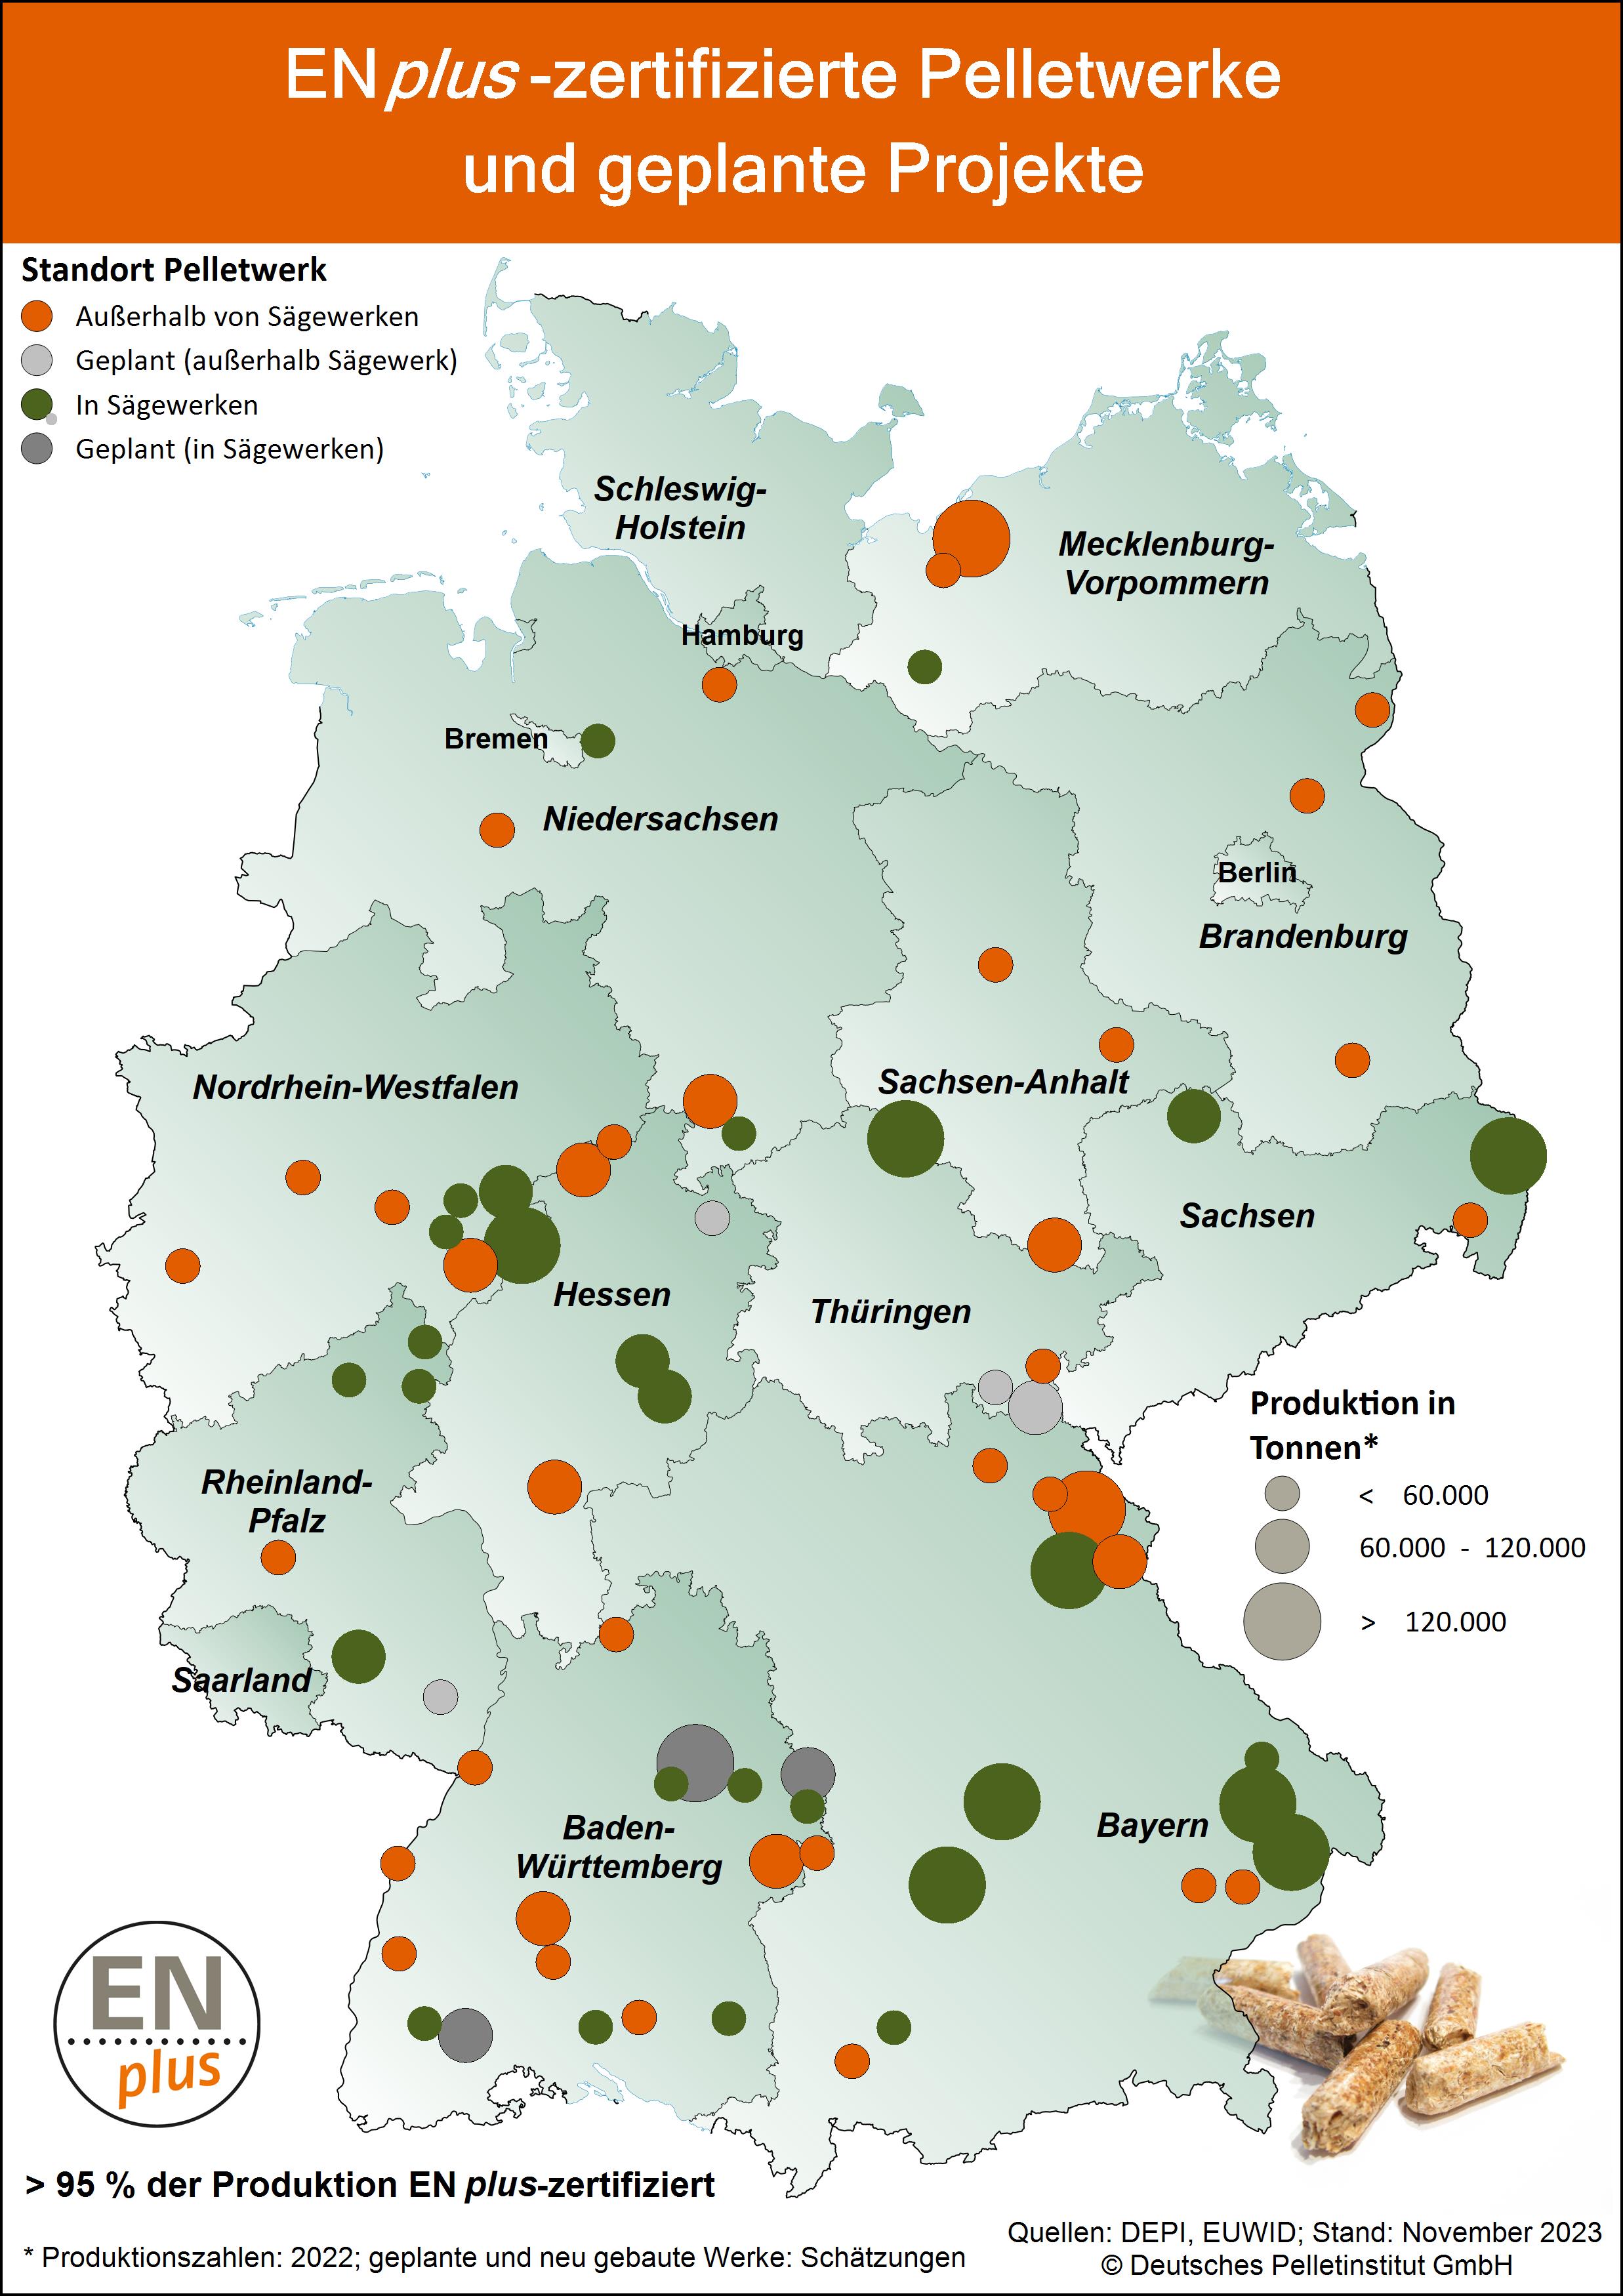 DEPV - ENplus-zertifizierte Pelletwerke in Deutschland (Karte)